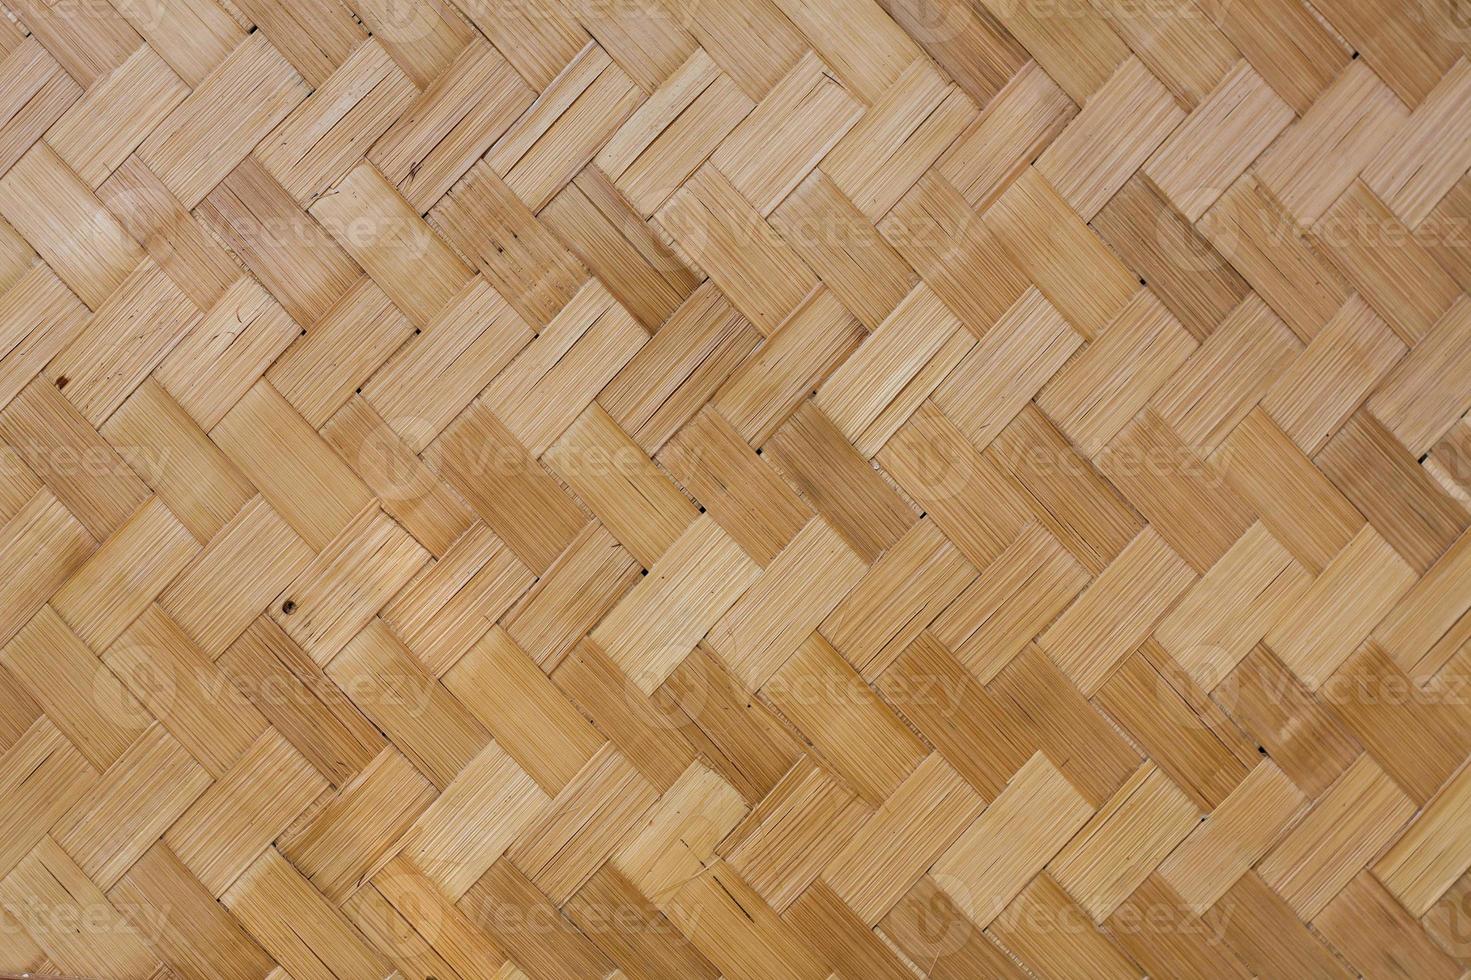 fundo e textura de bambu foto